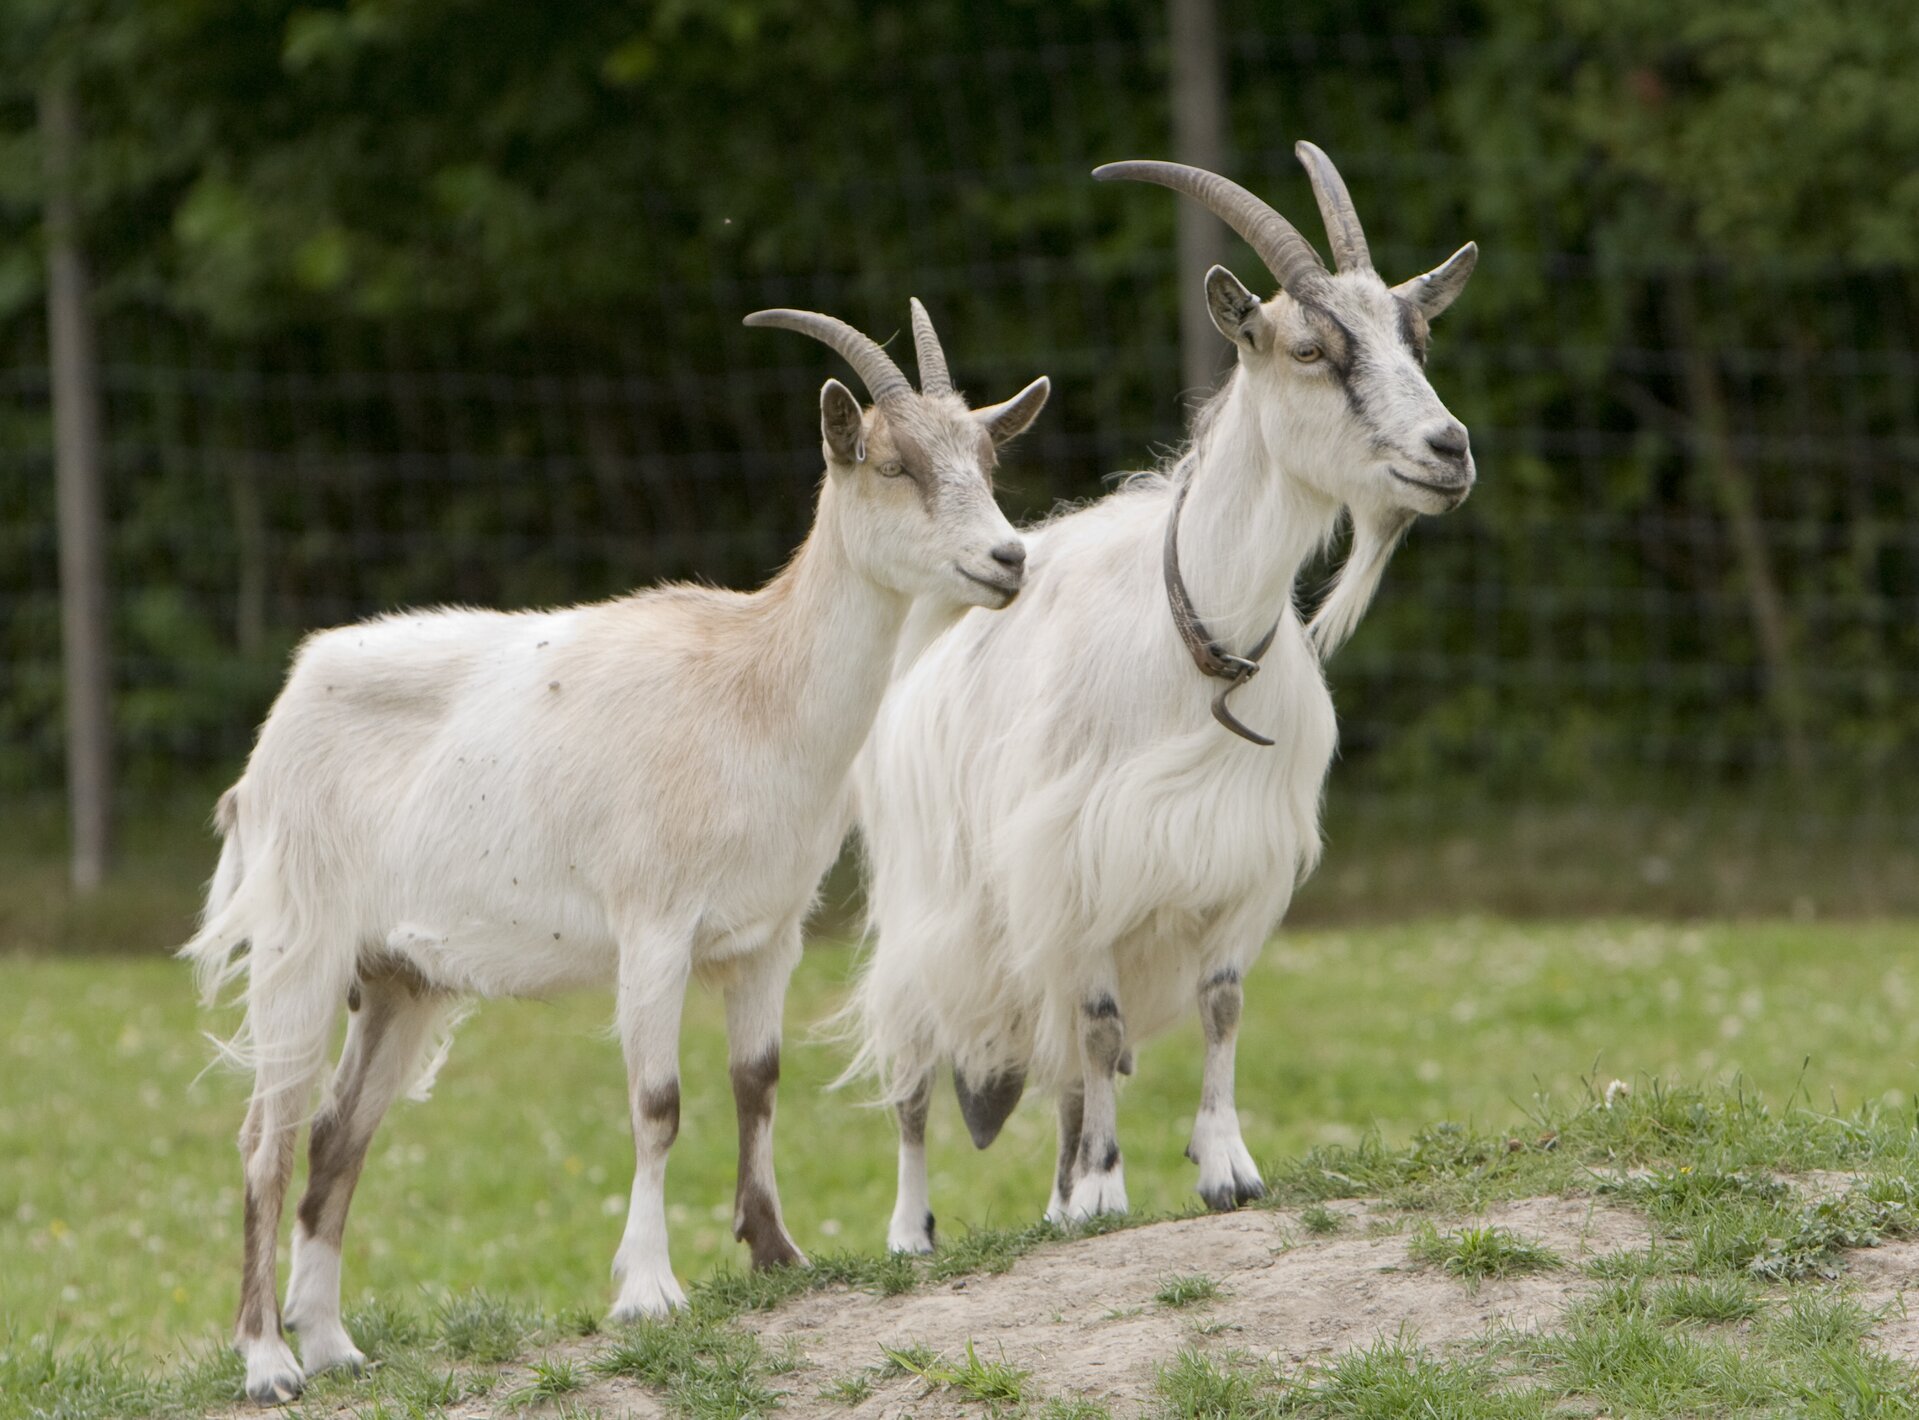 Na zdjęciu dwie kozy. Biała sierść, duże rogi. W tle ogrodzenie.